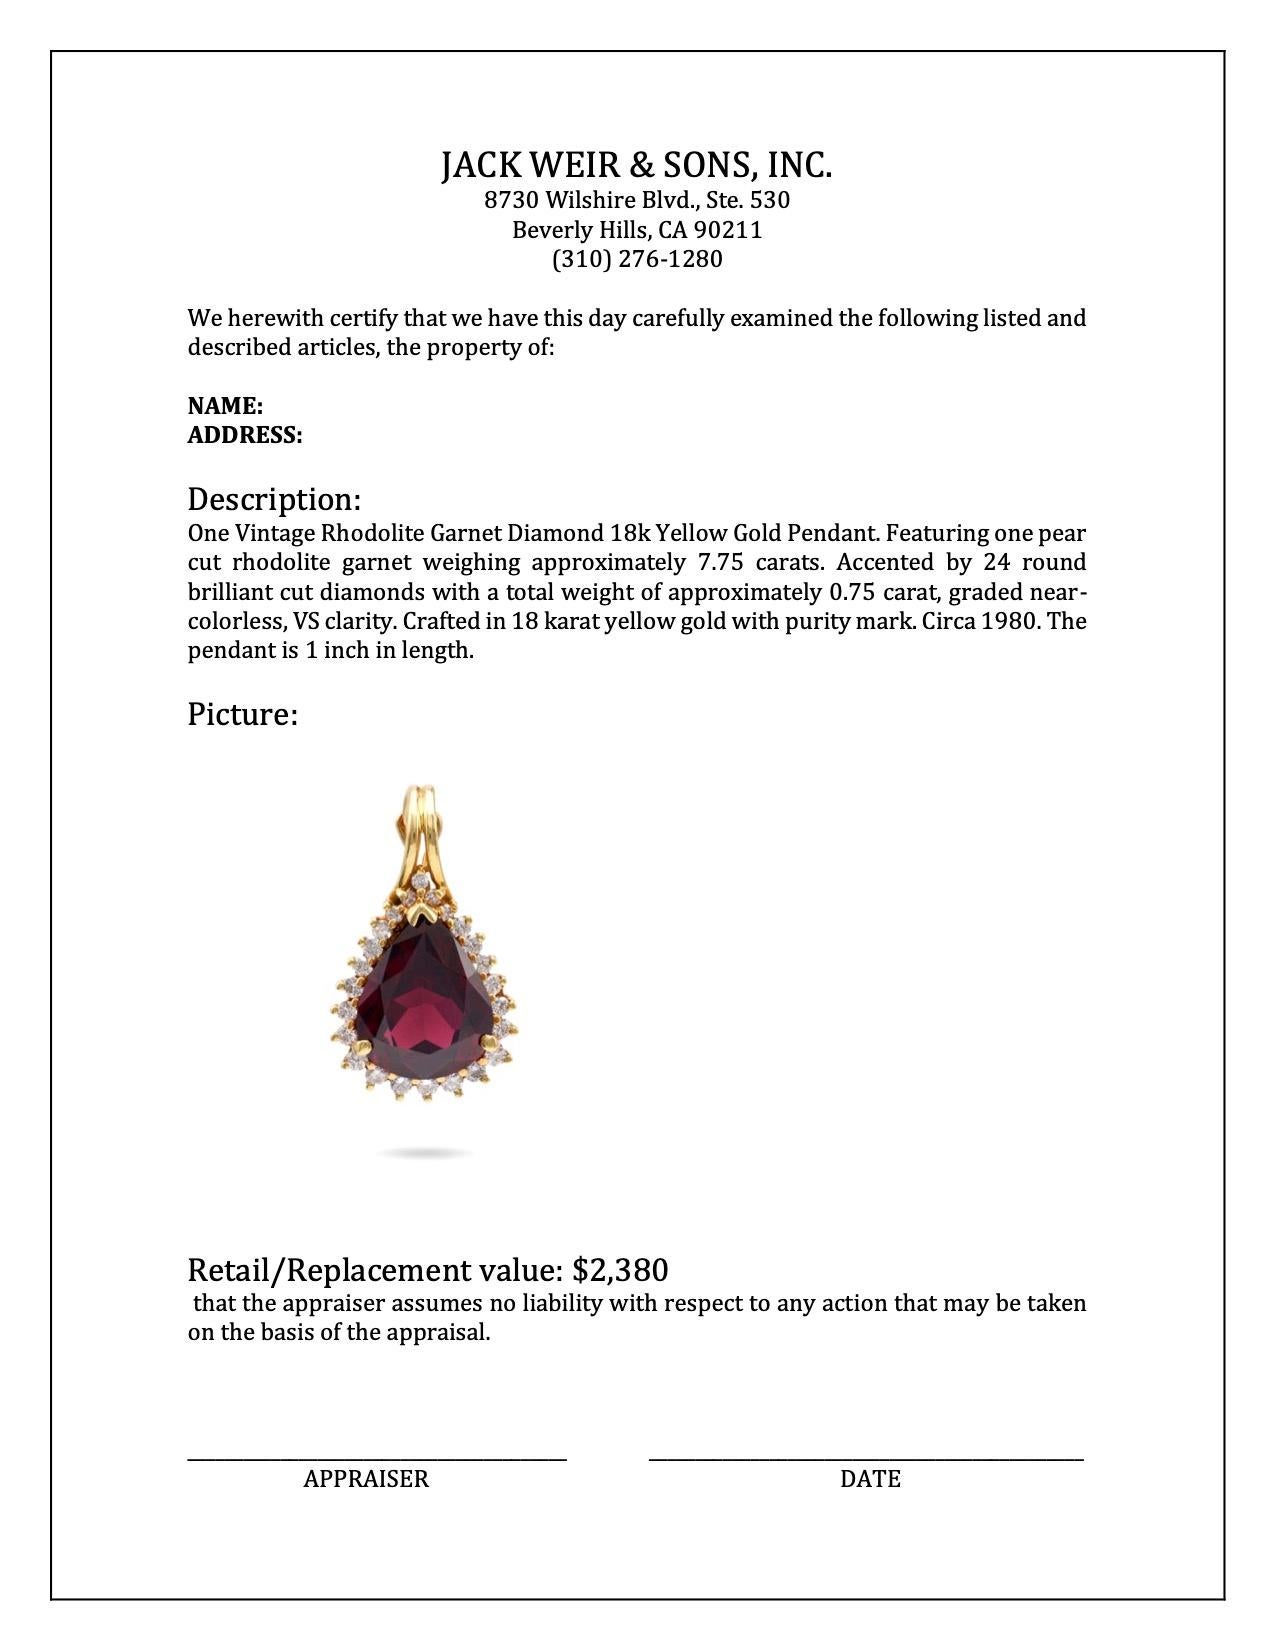 Women's or Men's Vintage Rhodolite Garnet Diamond 18k Yellow Gold Pendant For Sale